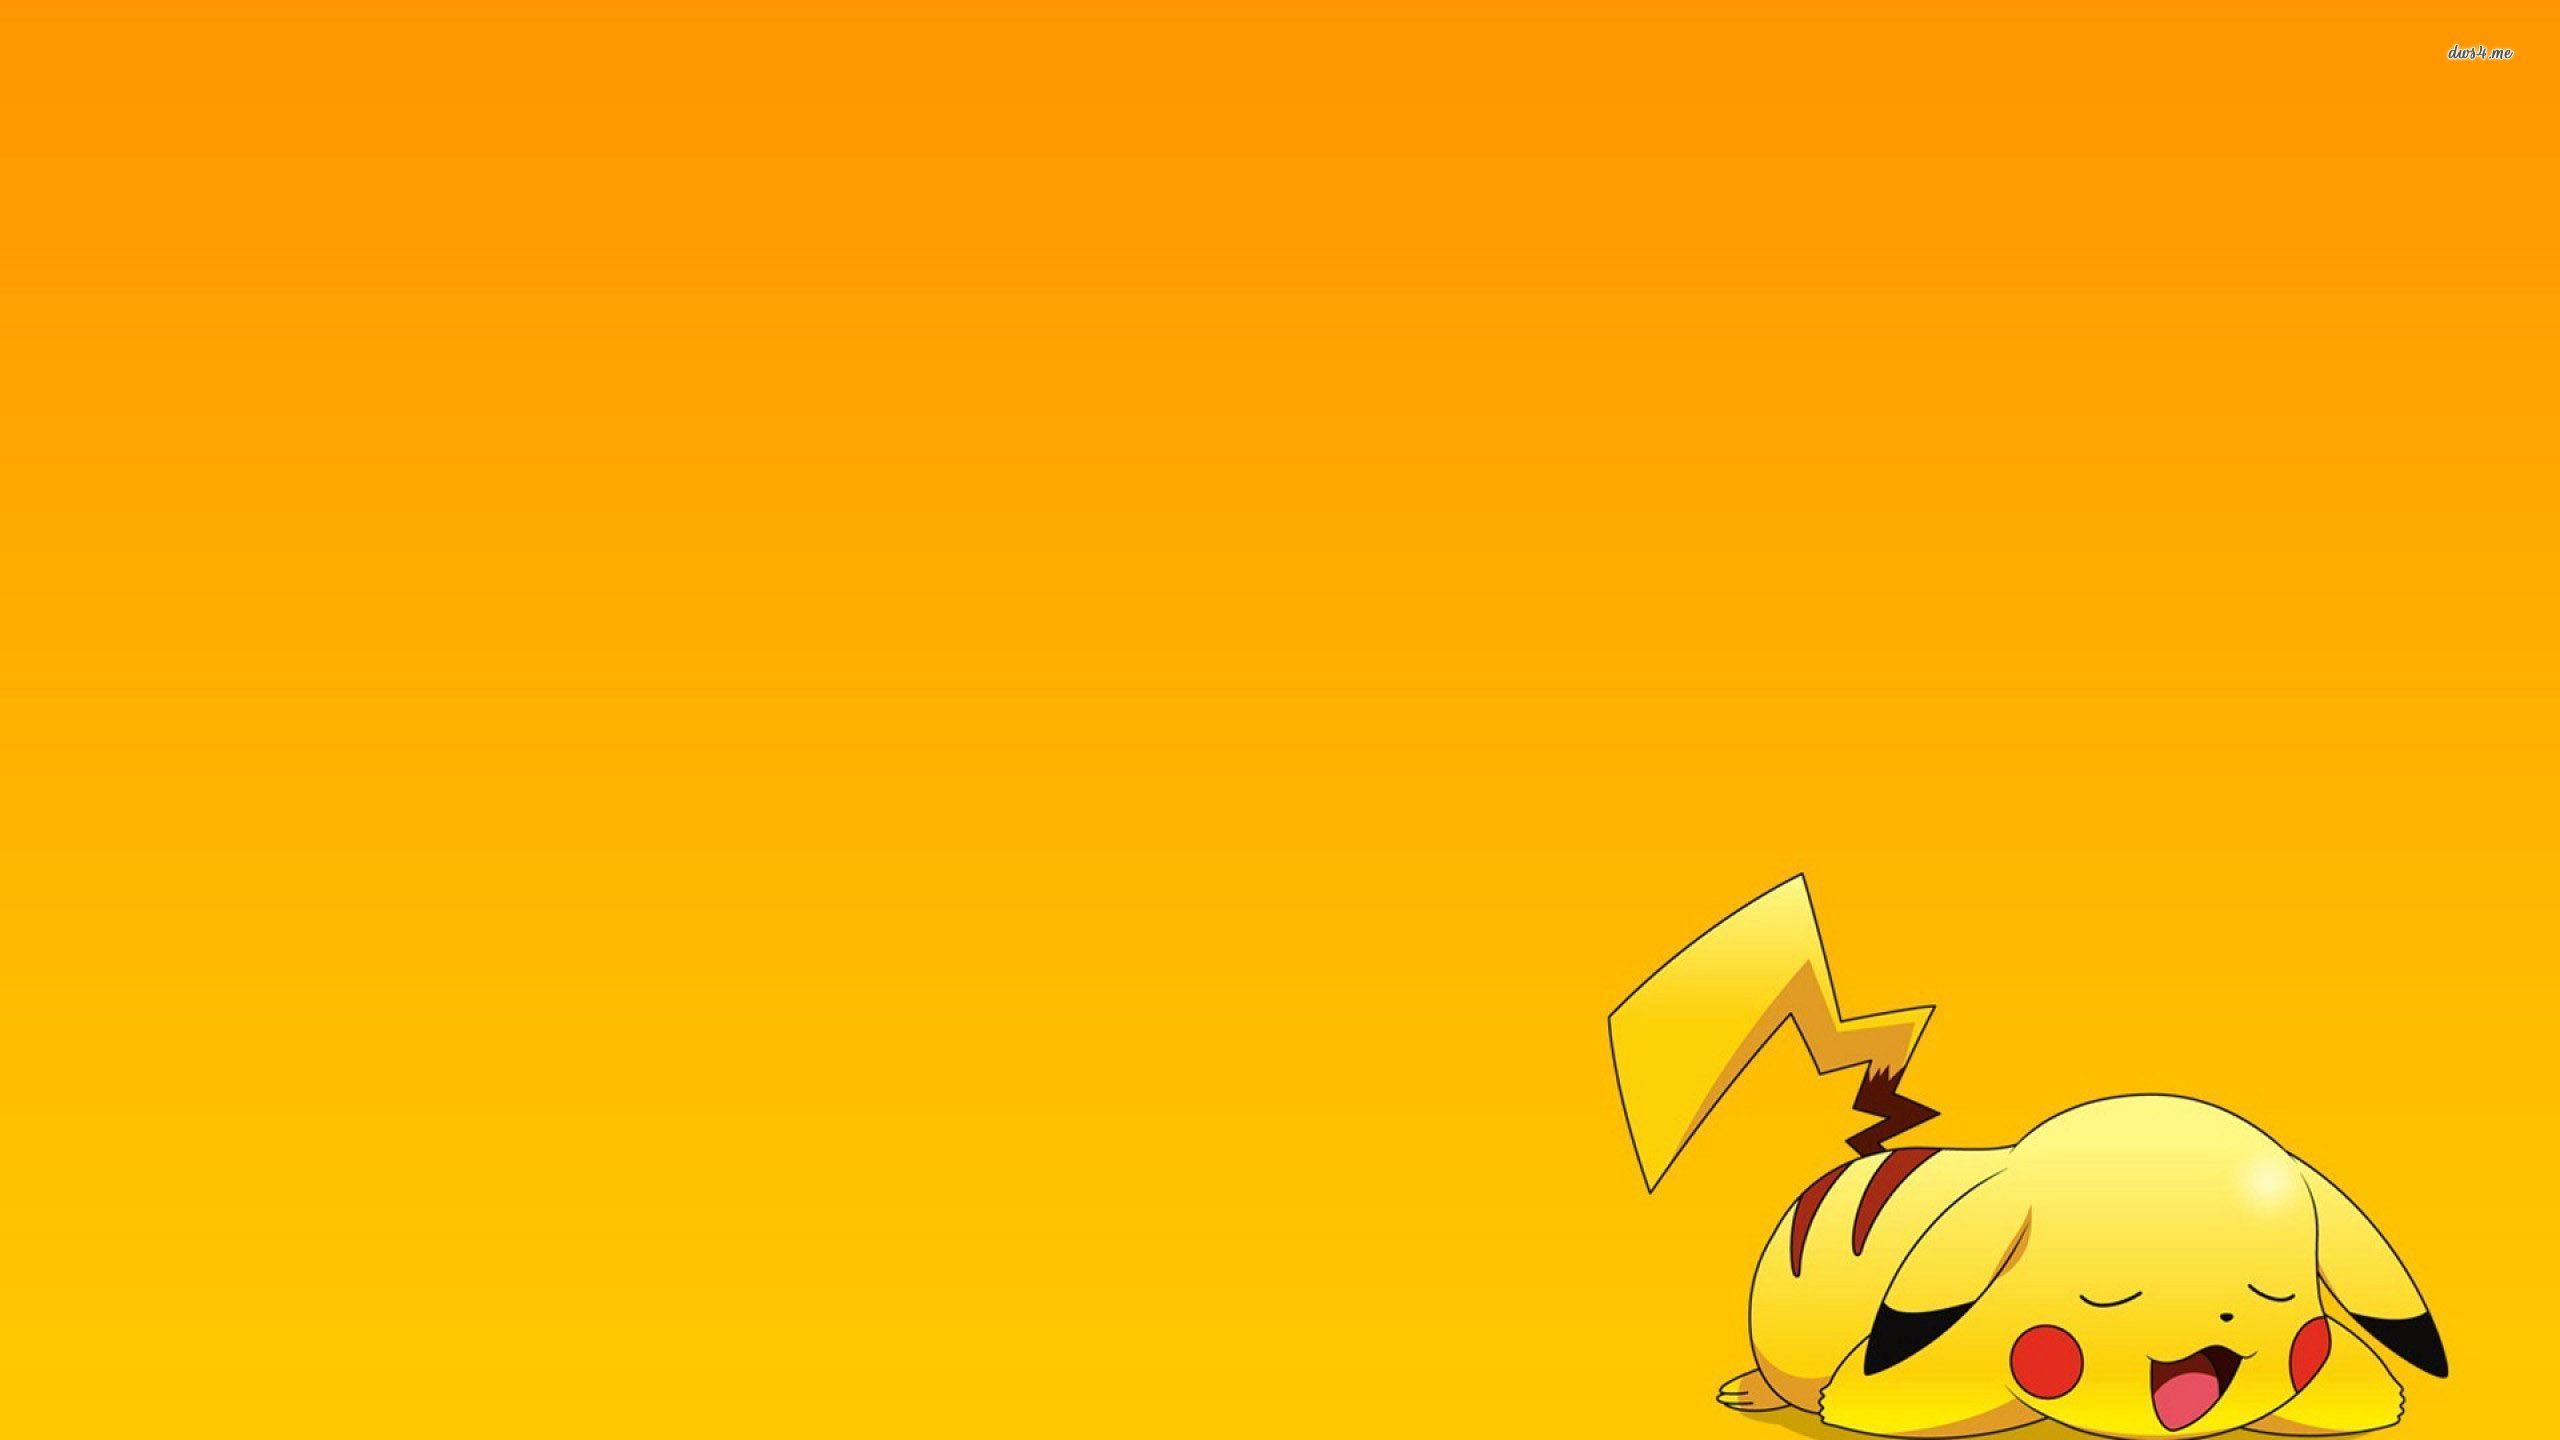 Pikachu - Pokemon wallpaper - Anime wallpapers - #28050